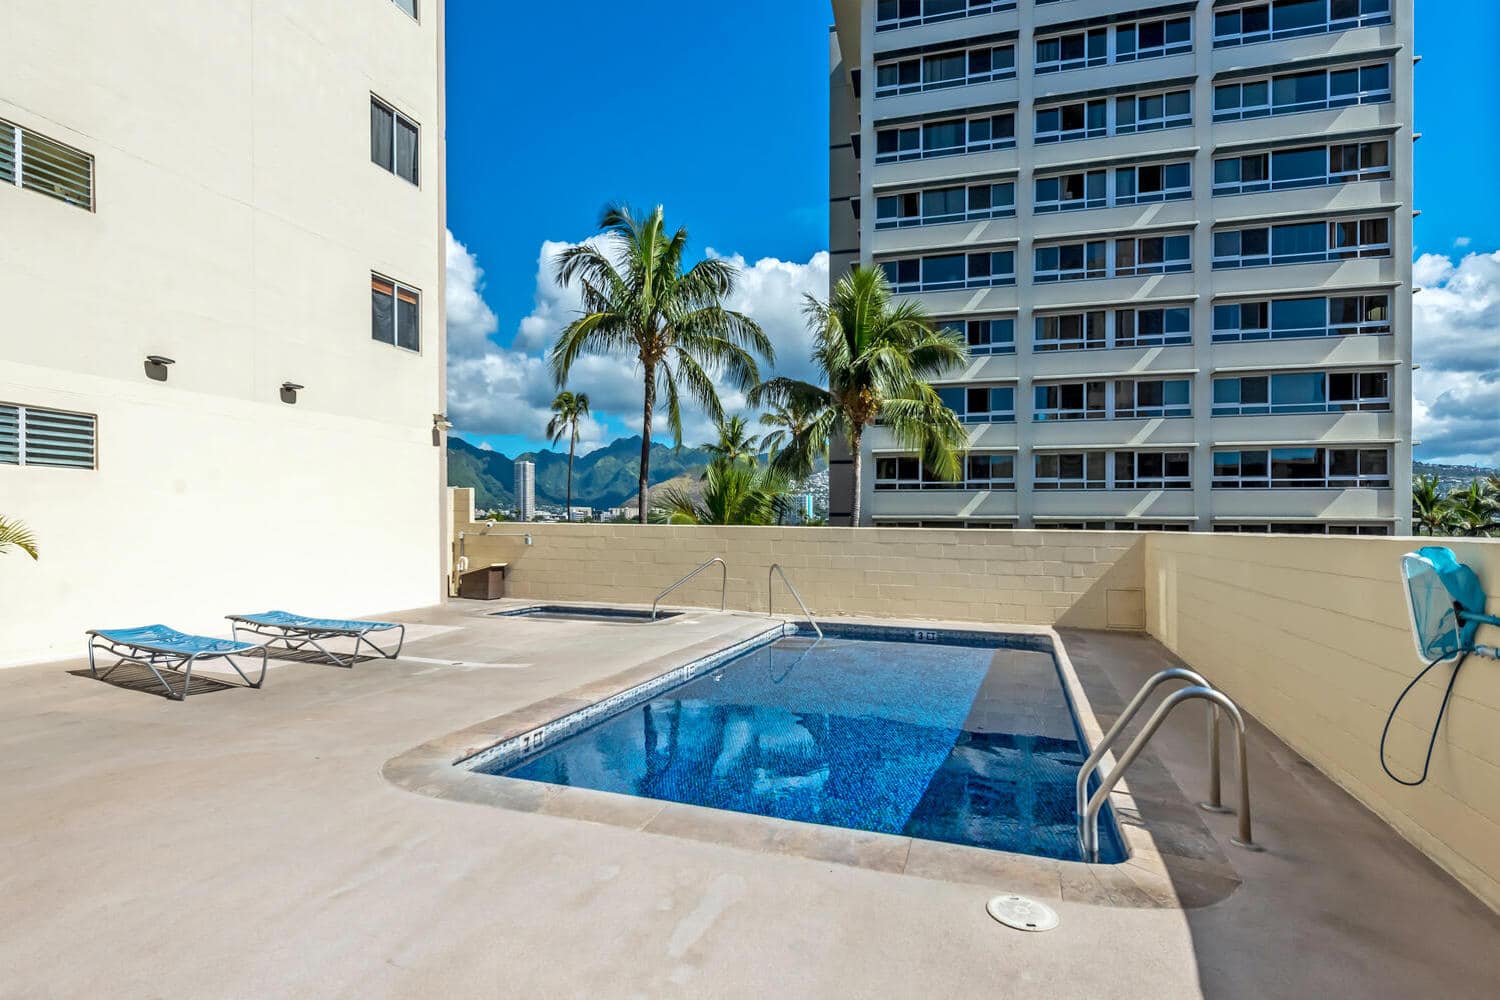 Pool Deck, Waikiki Lanais, Waikiki Beach Stays